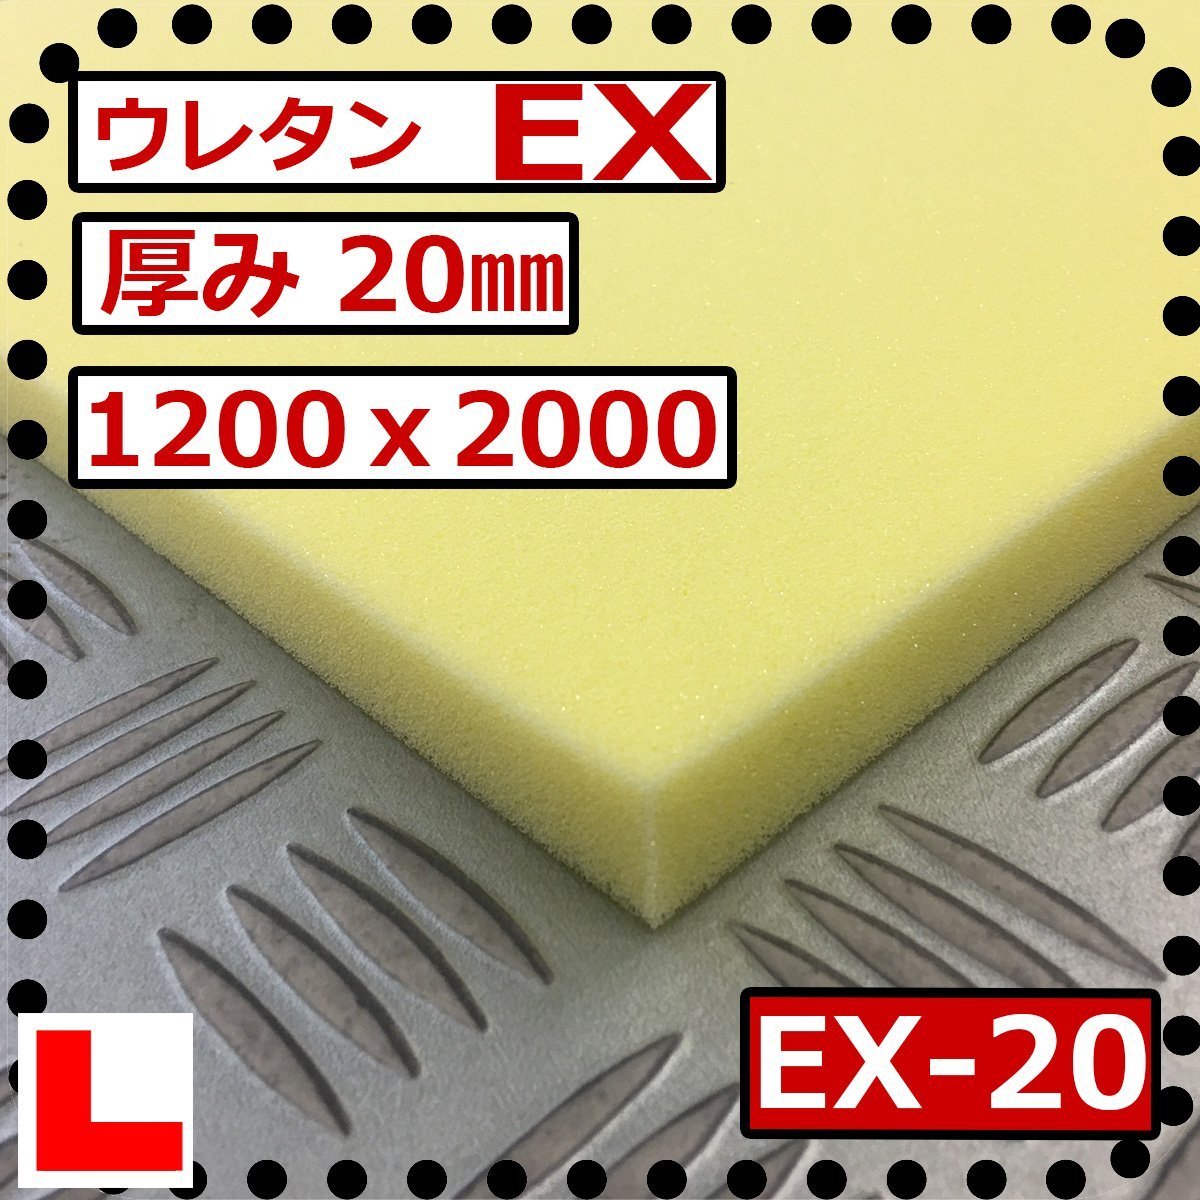 ウレタンフォーム【EX 硬度硬くしっかり】1200ｘ2000mm【厚さ20mm